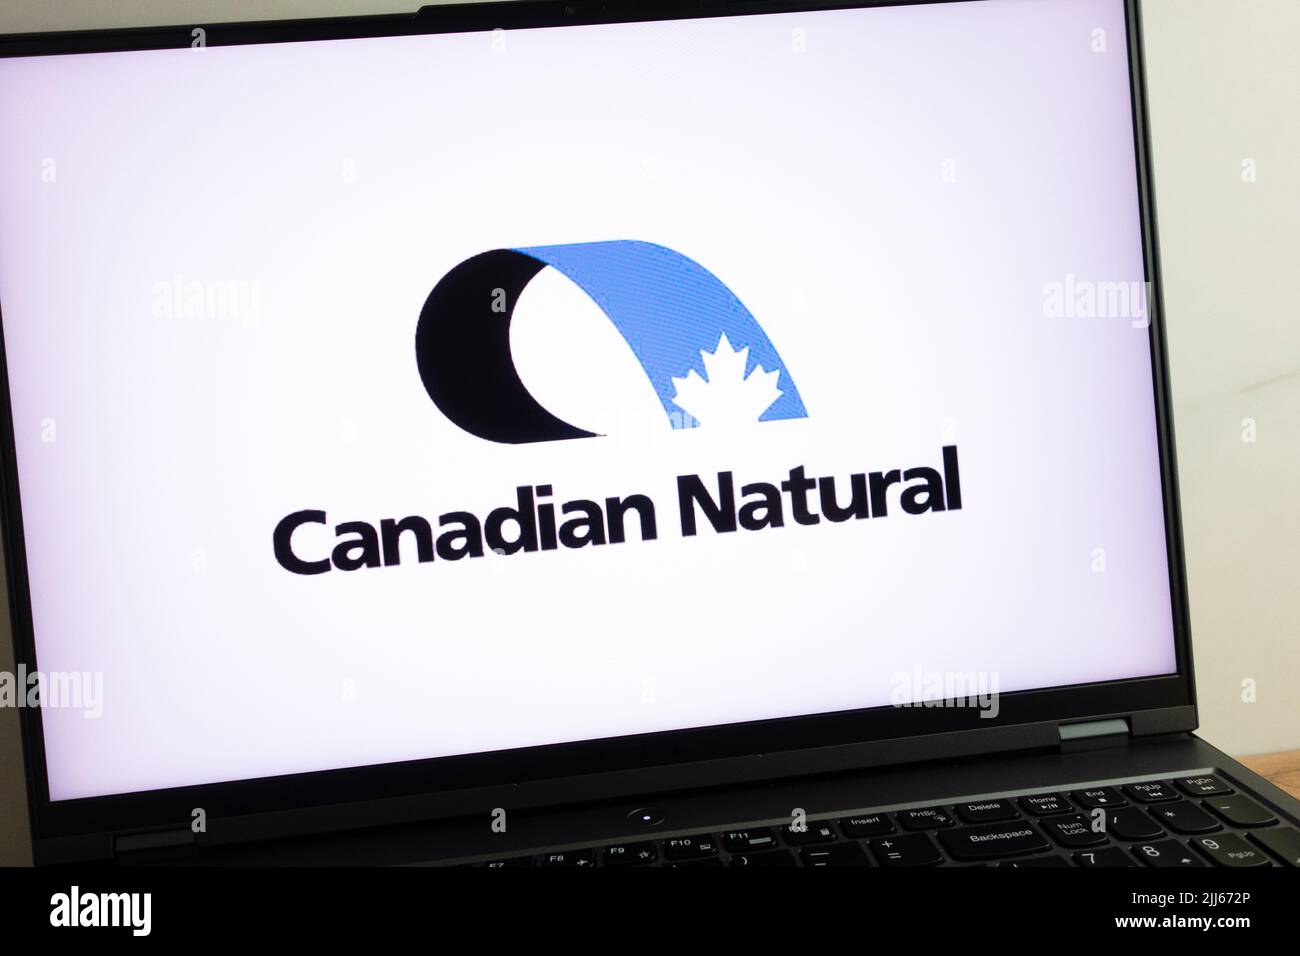 KONSKIE, POLOGNE - 21 juillet 2022 : logo de la compagnie pétrolière et gazière de Ressources naturelles Canada limitée (CNRL) affiché sur l'écran d'un ordinateur portable Banque D'Images